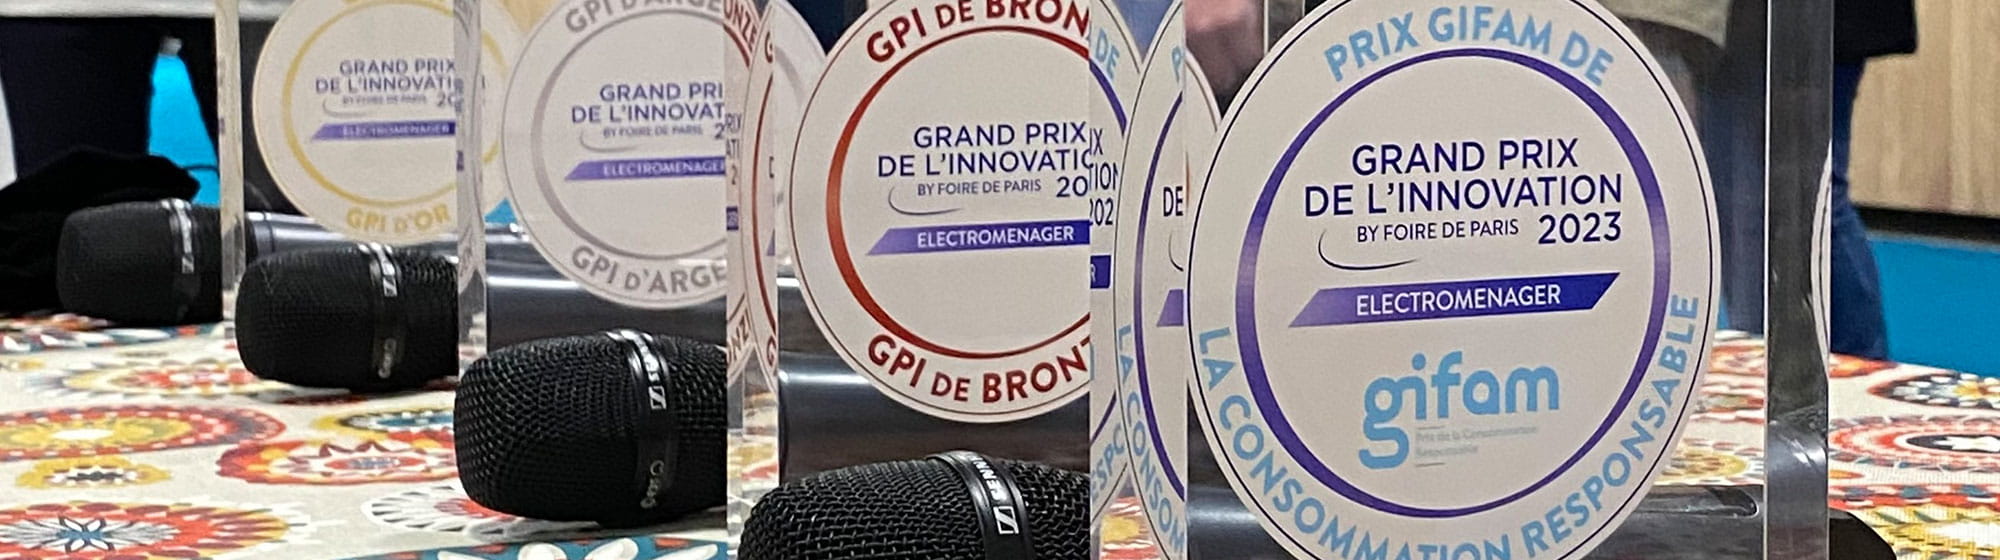 Trophées Grand Prix de l'Innovation